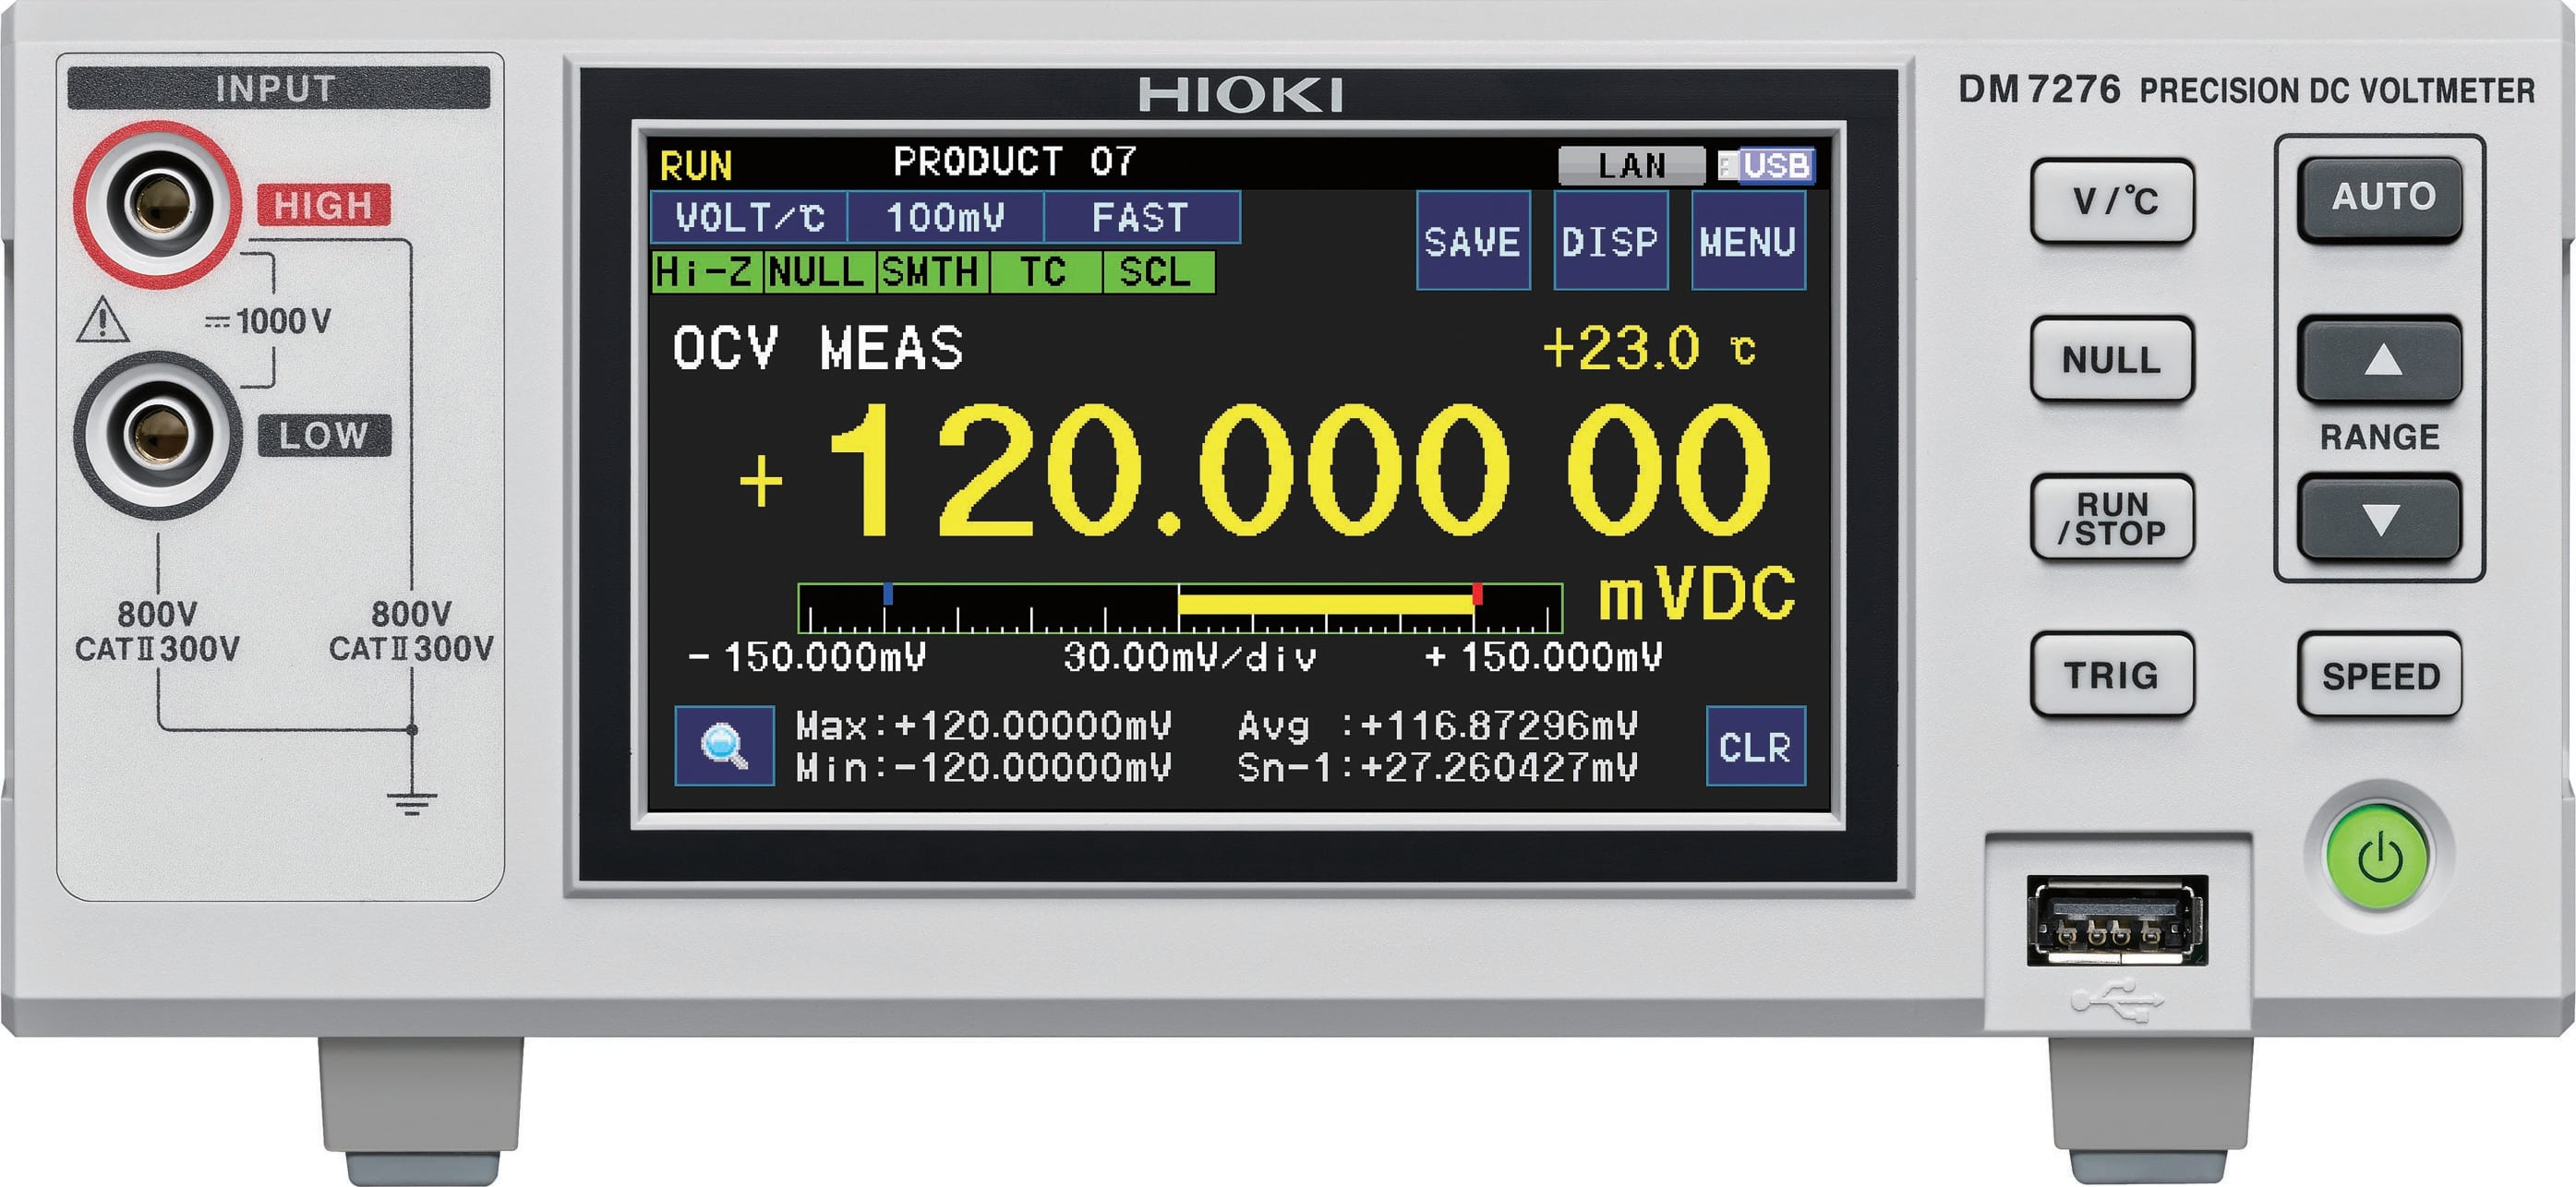 Hioki DM7276-02 Precision DC Voltmeter with GP-IB